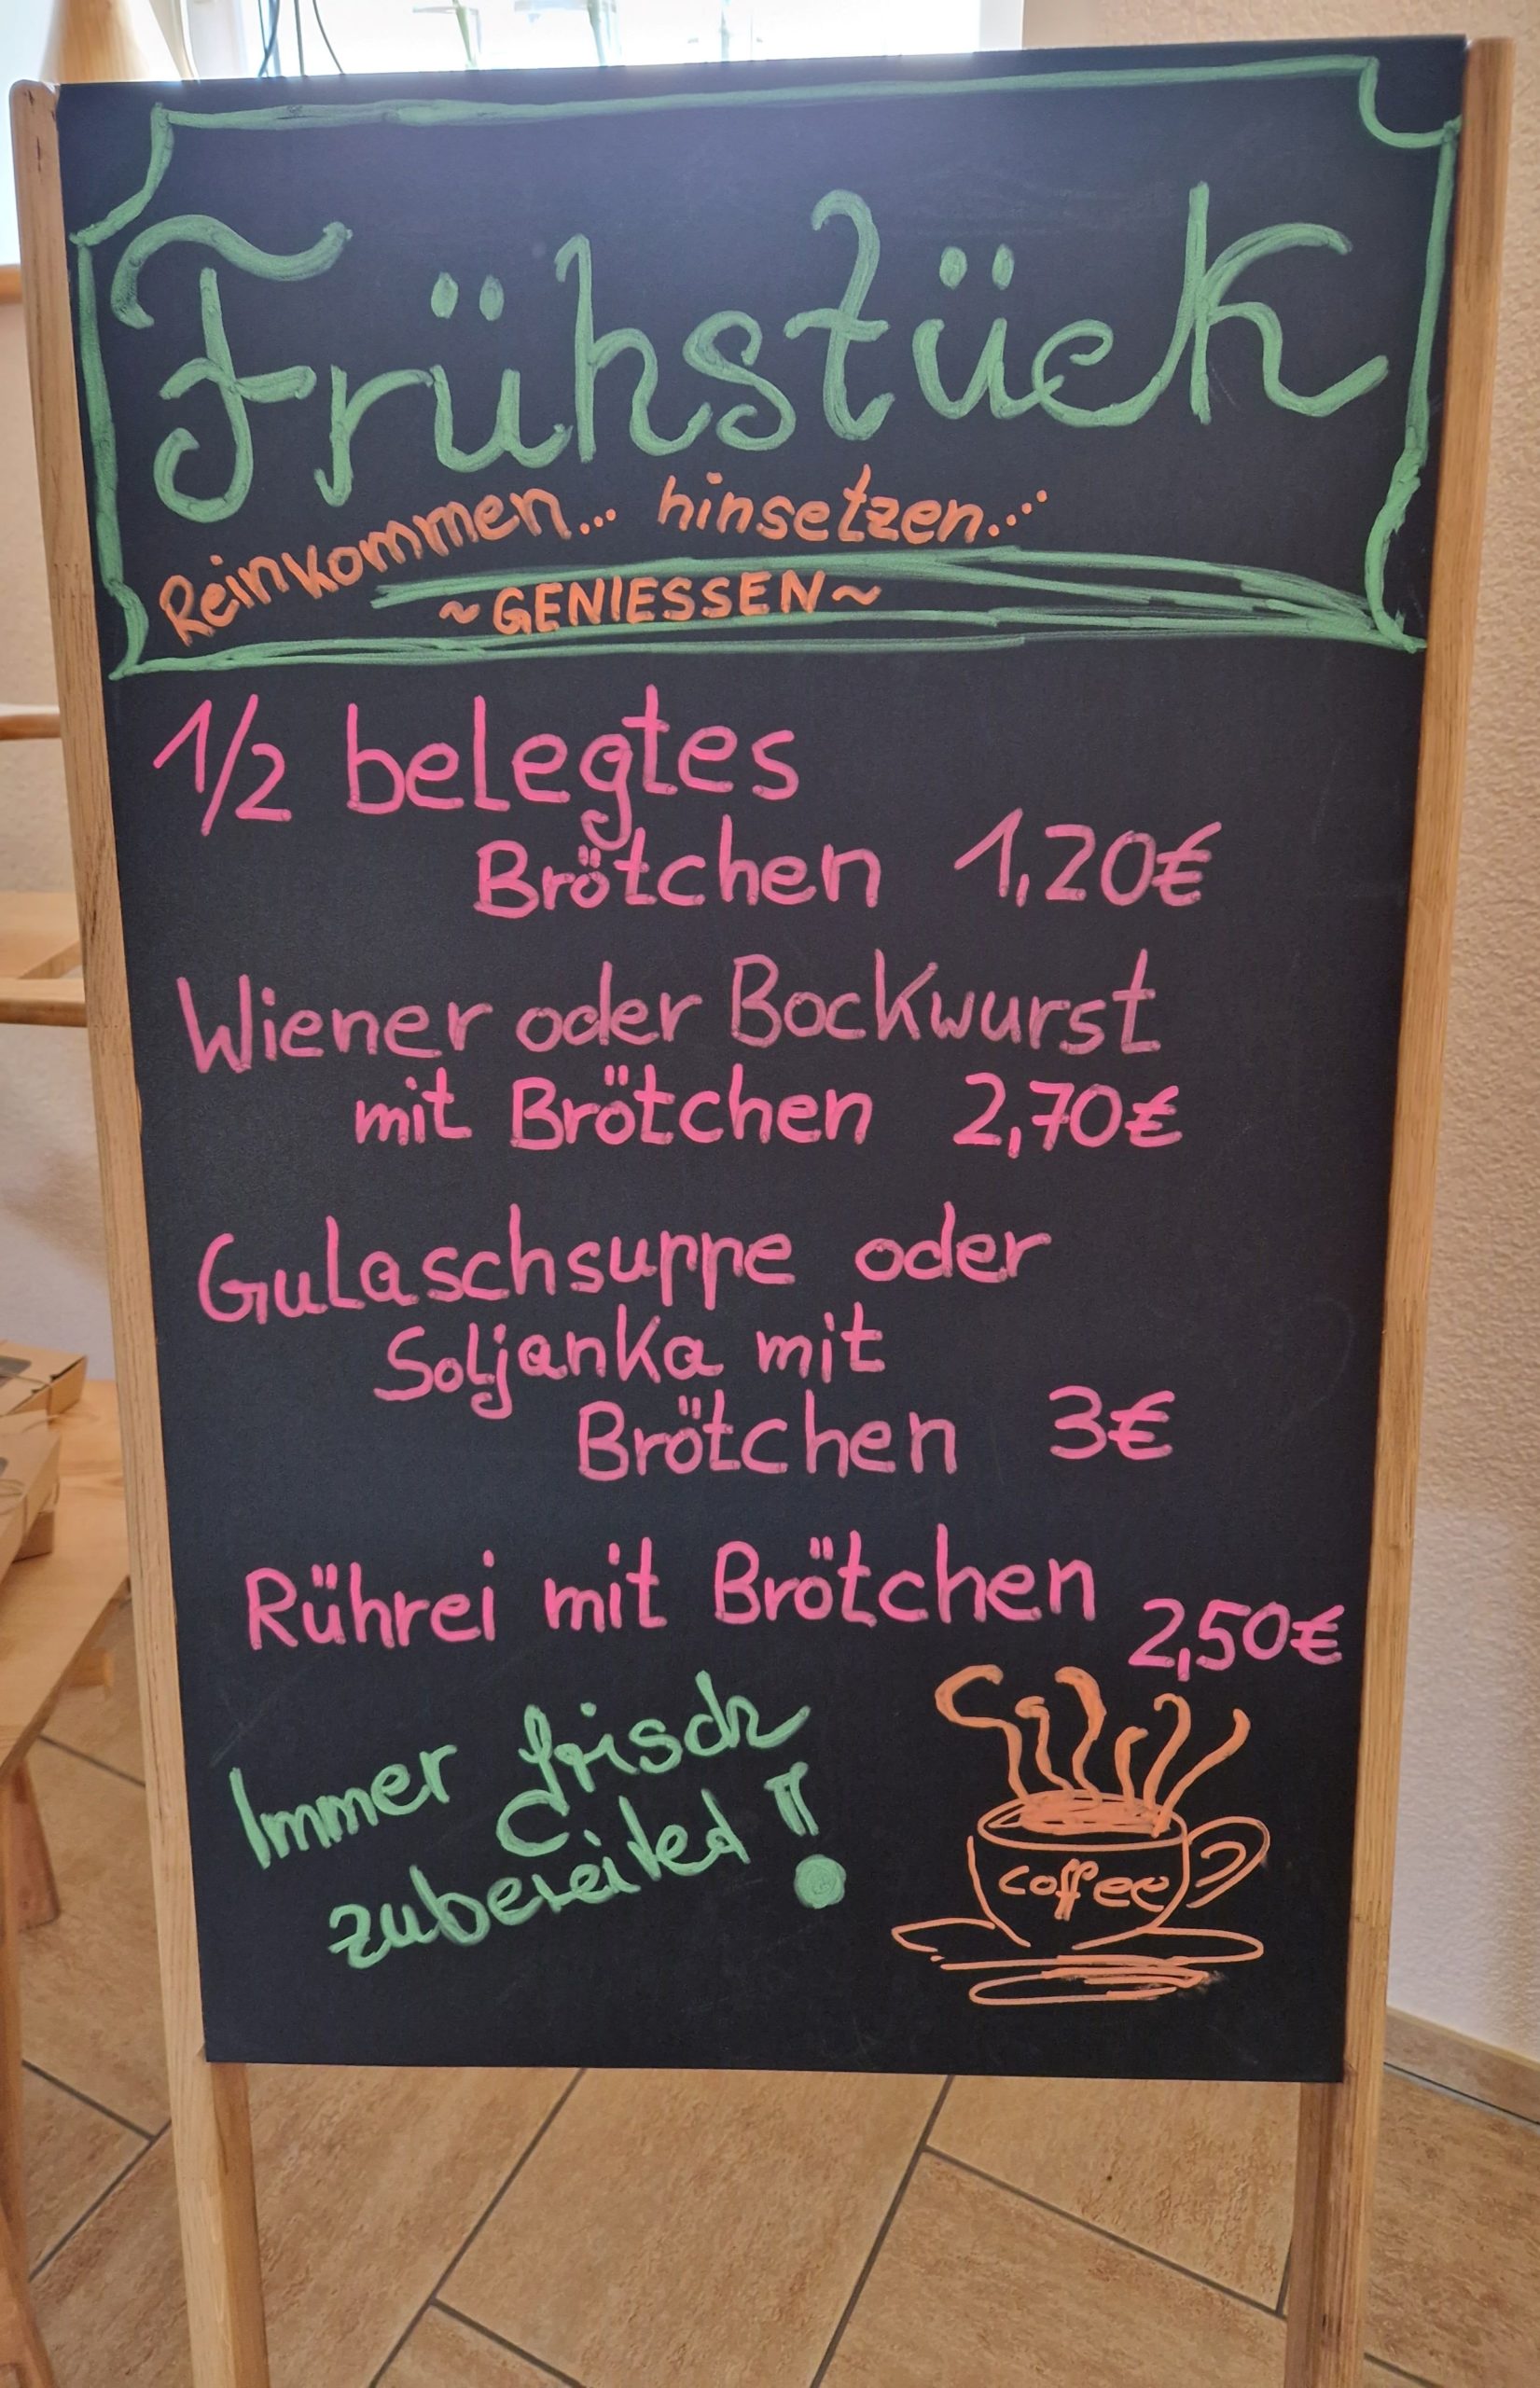 Frühstück. 1/2 belegtes Brötchen 1,20 €; Wiener oder Bockwurst mit Brötchen 2,70 €; Gulaschsuppe oder Soljanka mit Brötchen 3,00 €; Rührei mit Brötchen 2,50 €